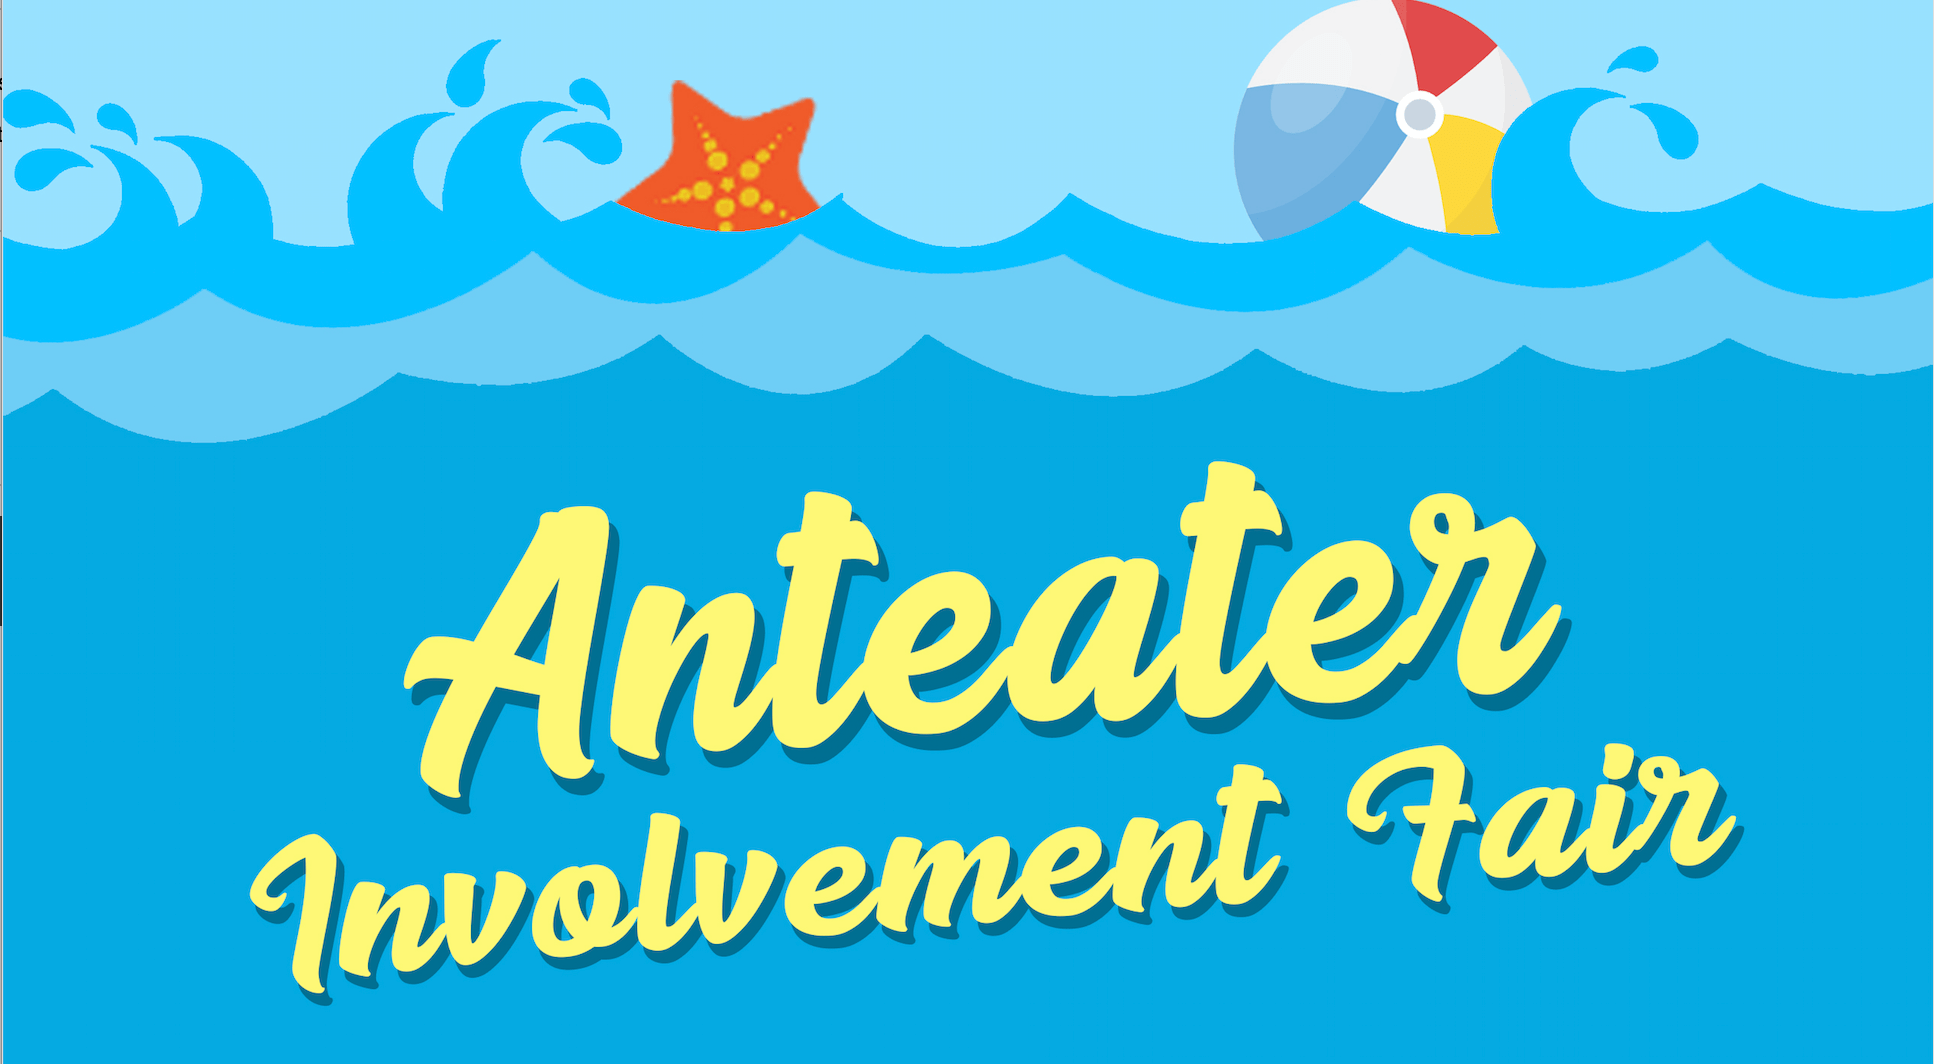 Anteater Involvement Fair – 9/23/19